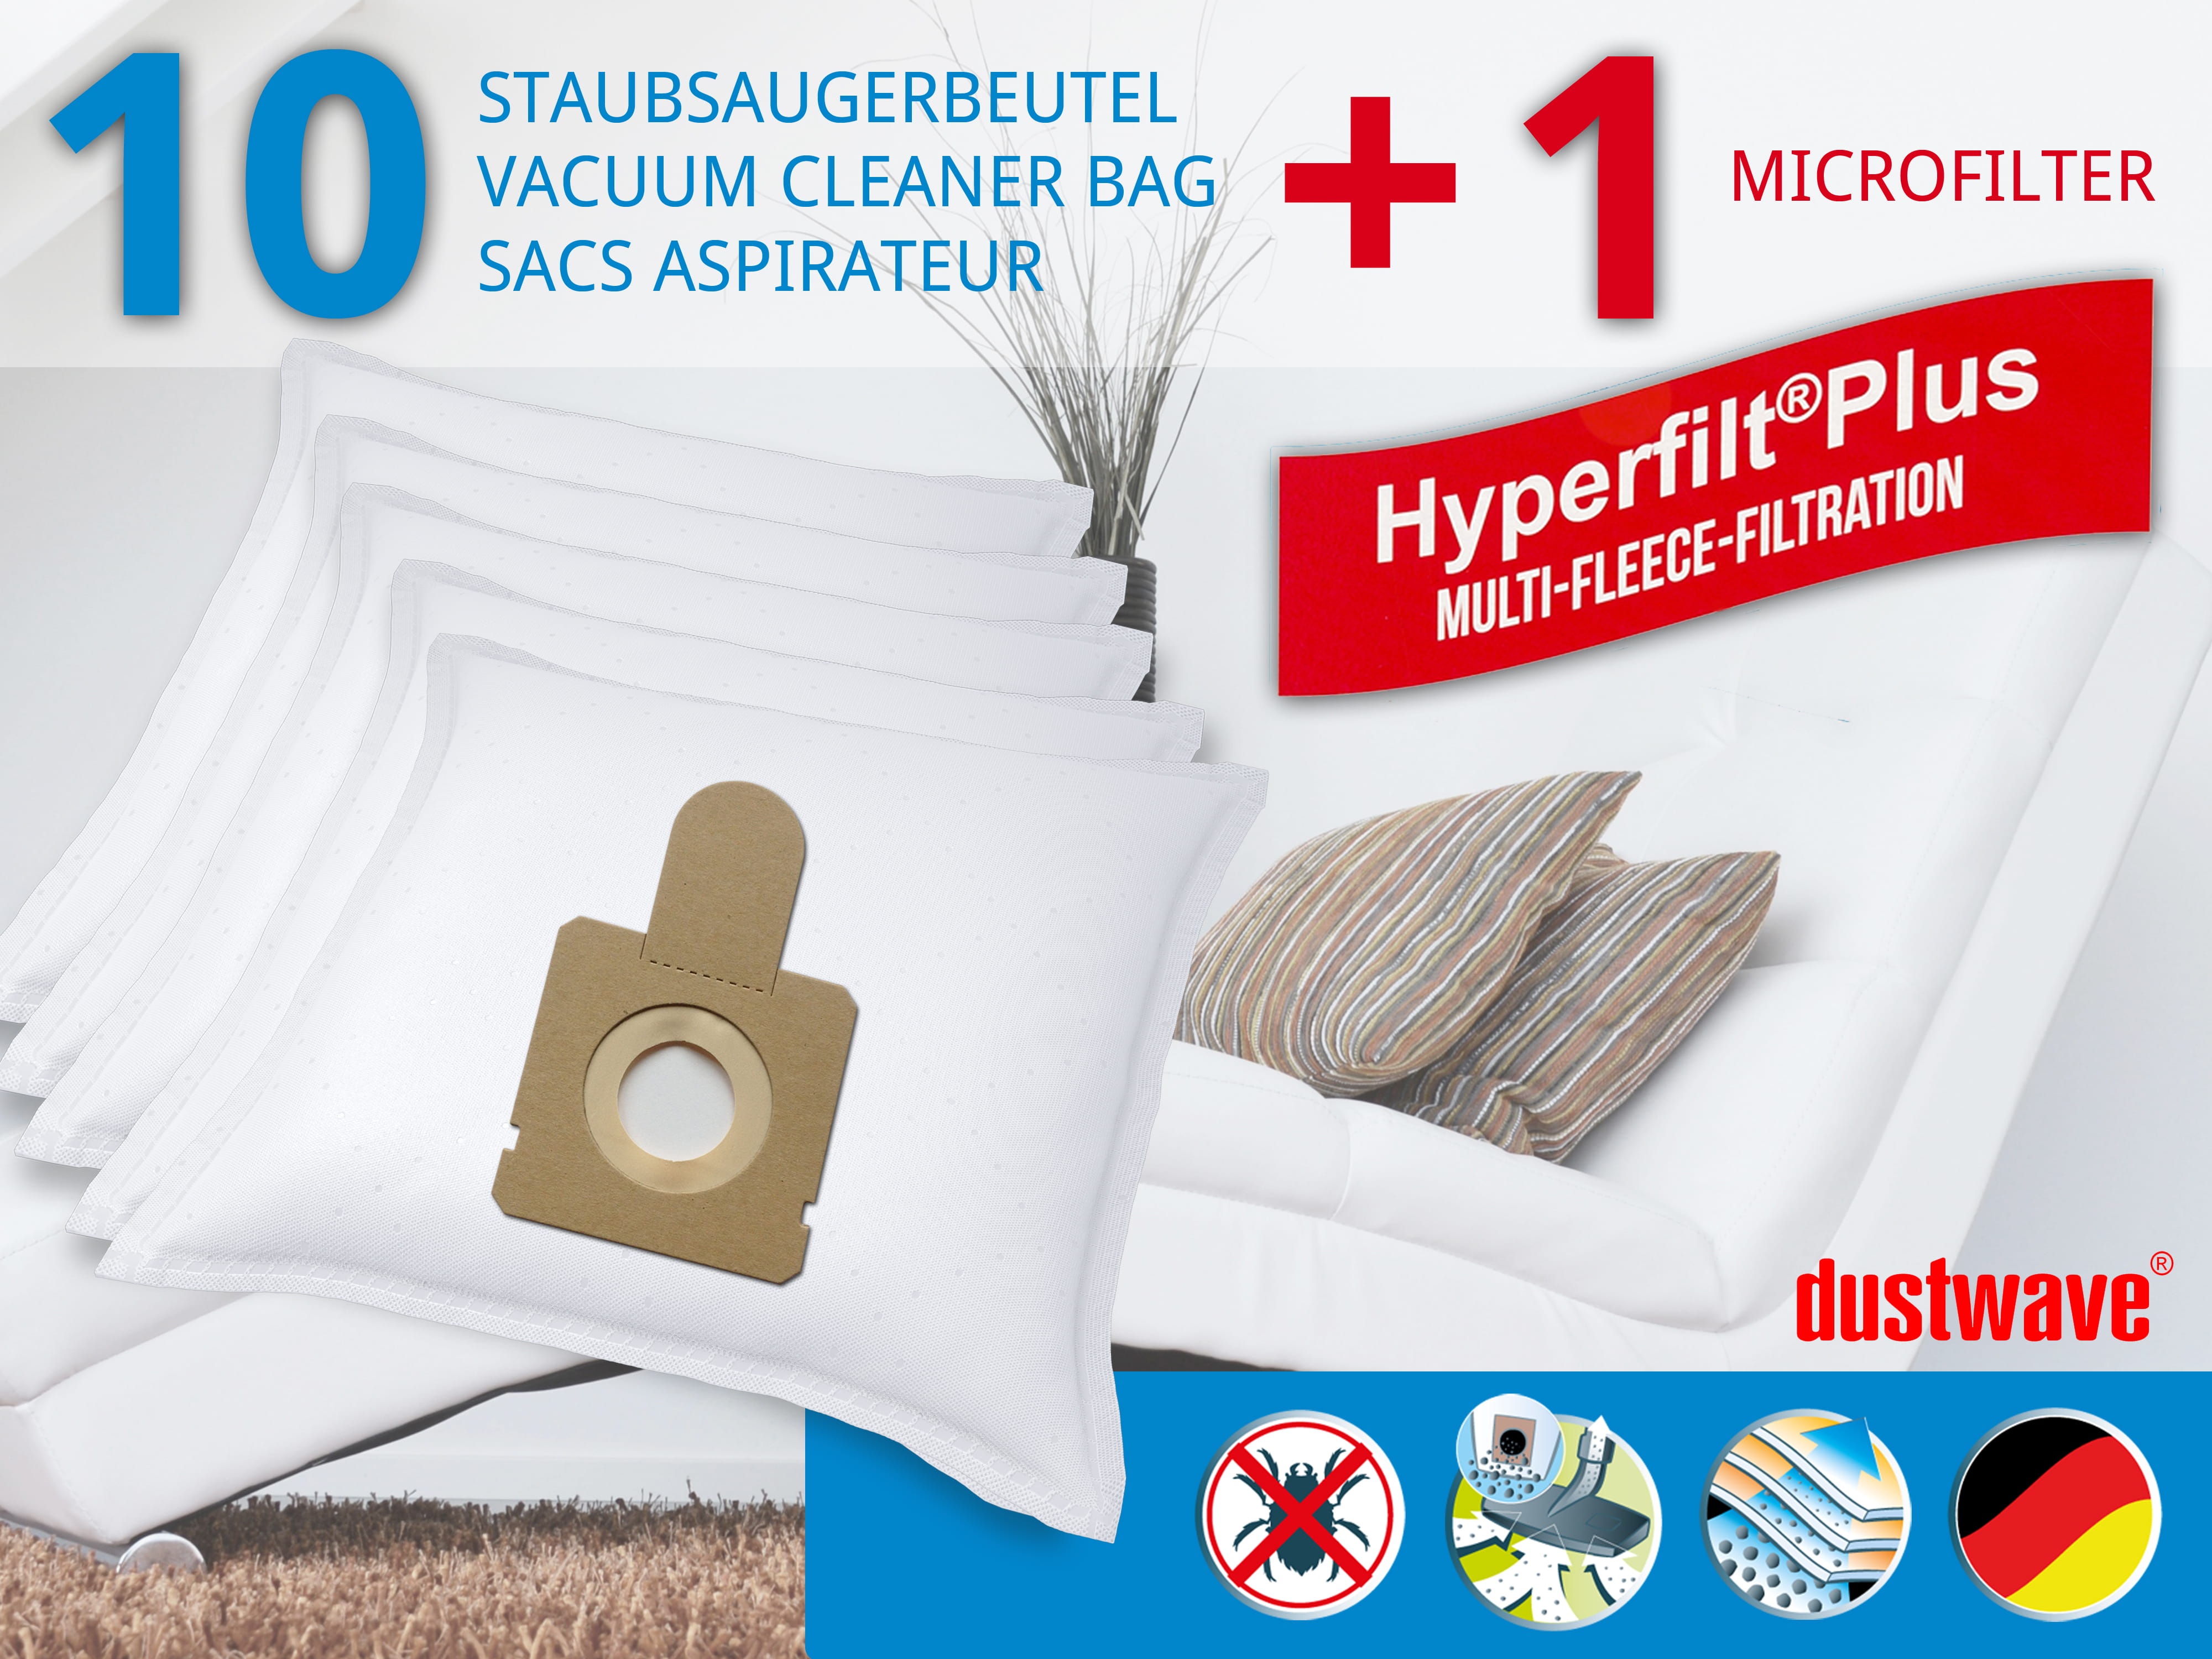 Dustwave® 10 Staubsaugerbeutel für Blue Wind ATB 14 / ATB14 - hocheffizient, mehrlagiges Mikrovlies mit Hygieneverschluss - Made in Germany